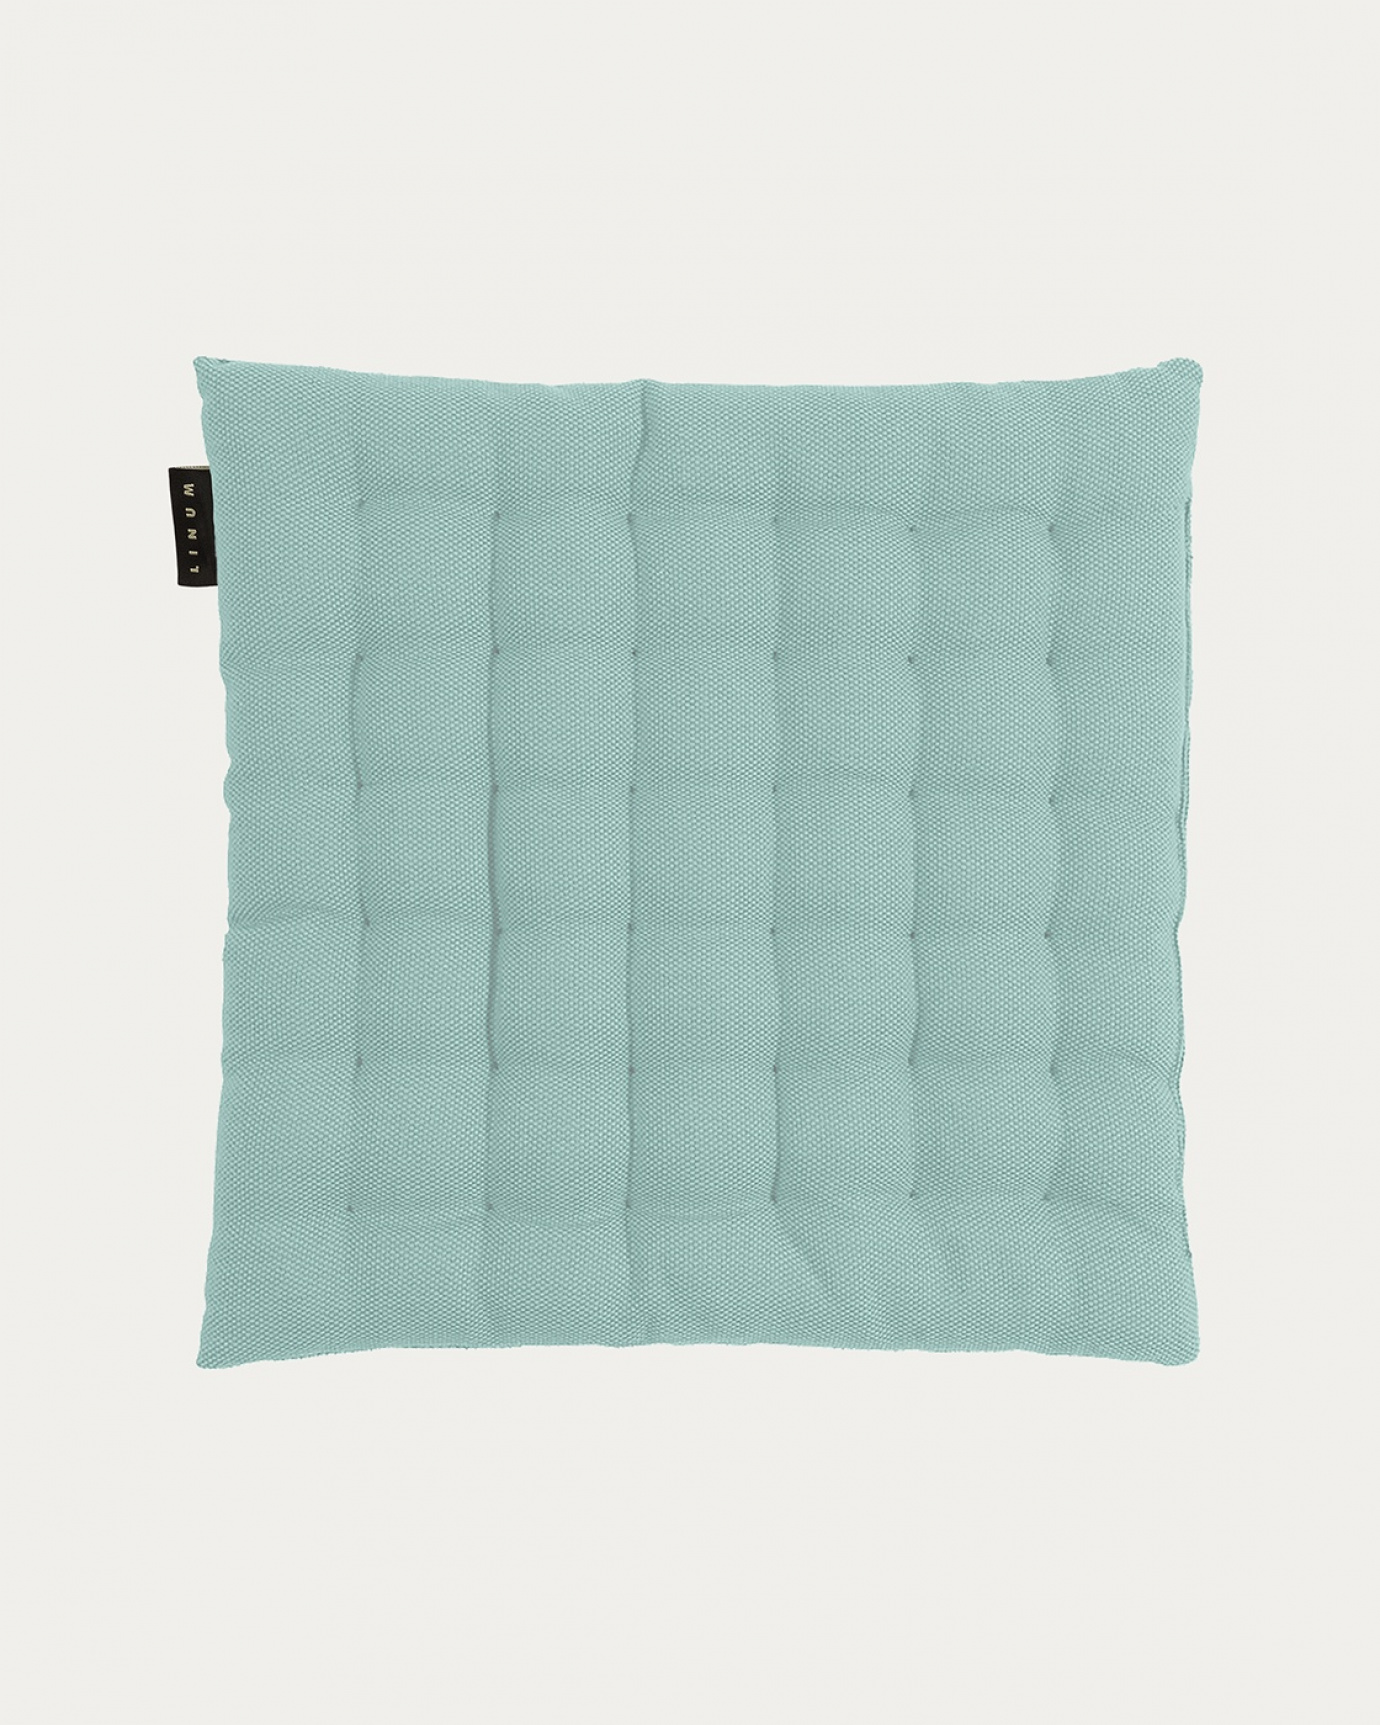 Immagine prodotto turchese antico PEPPER cuscini sedie di cotone con imbottitura in poliestere di LINUM DESIGN. Dimensioni 40x40 cm.